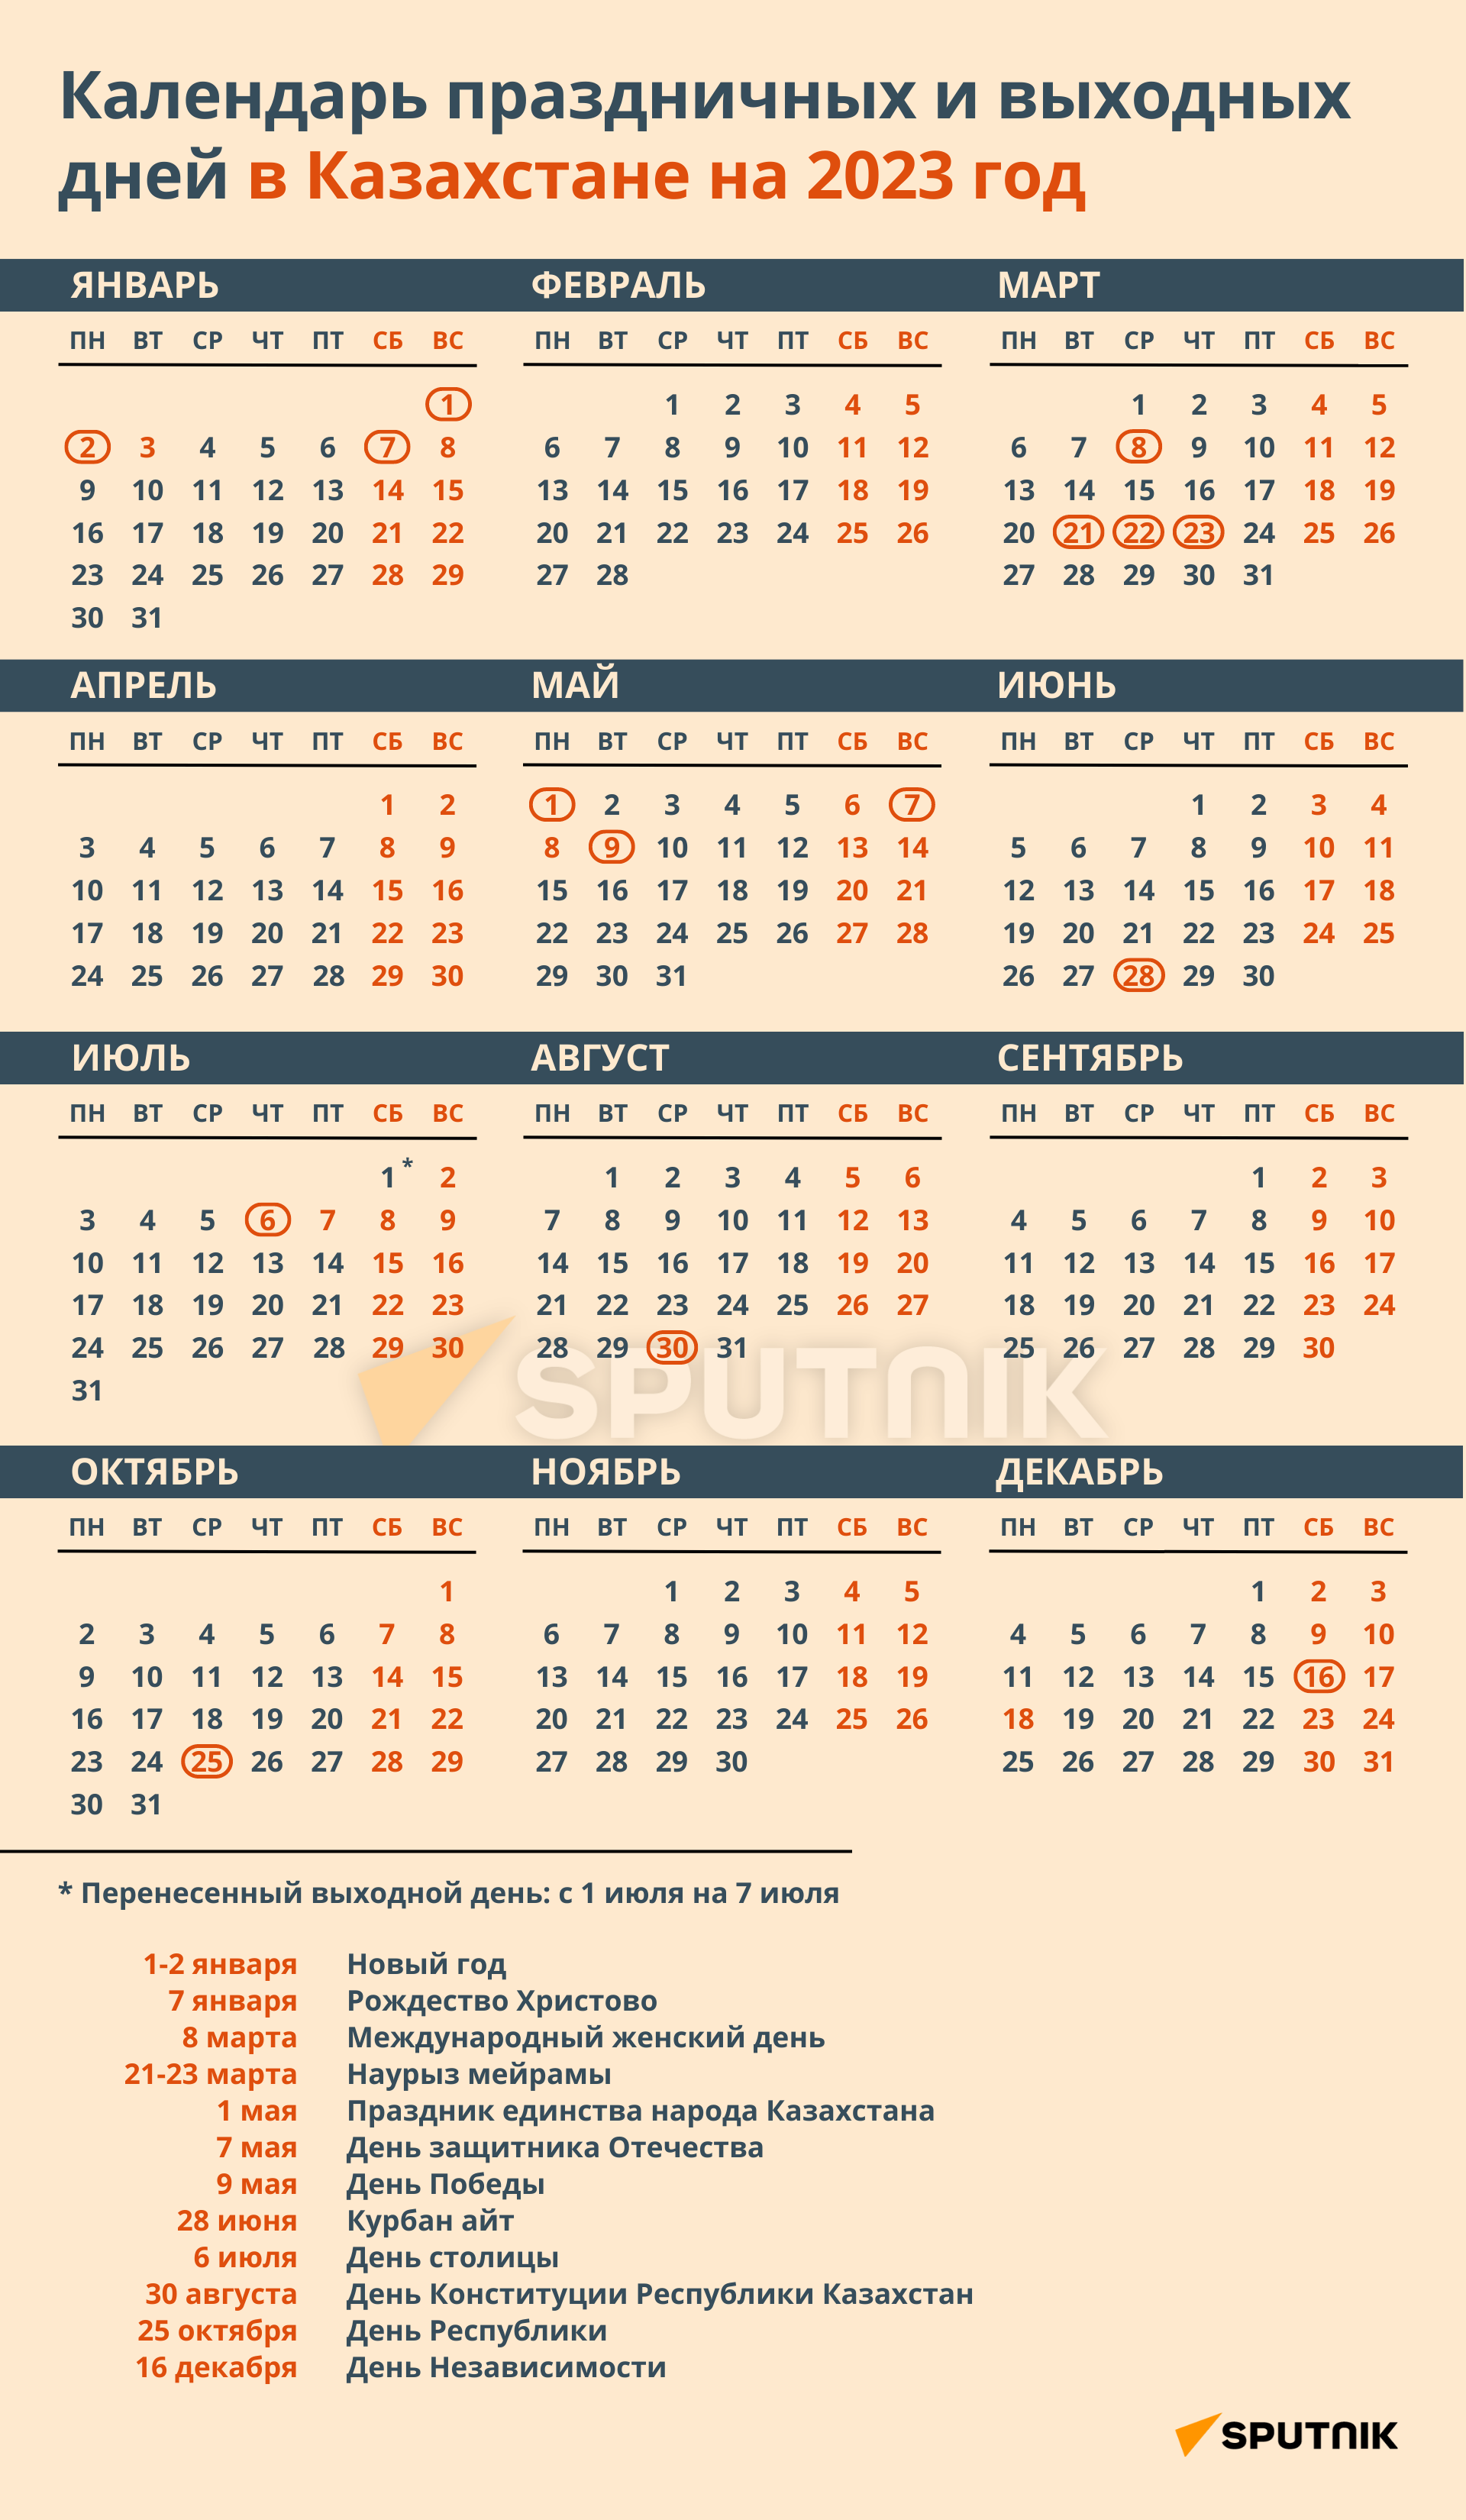 Наурыз сколько дней отдыхаем 2024 в казахстане. Праздничные дни в Казахстане в 2023 году. Нерабочие дни в Казахстане 2023. Календарь праздников на 2023 год в Казахстане. Календарь праздничных дней в Казахстане на 2023.